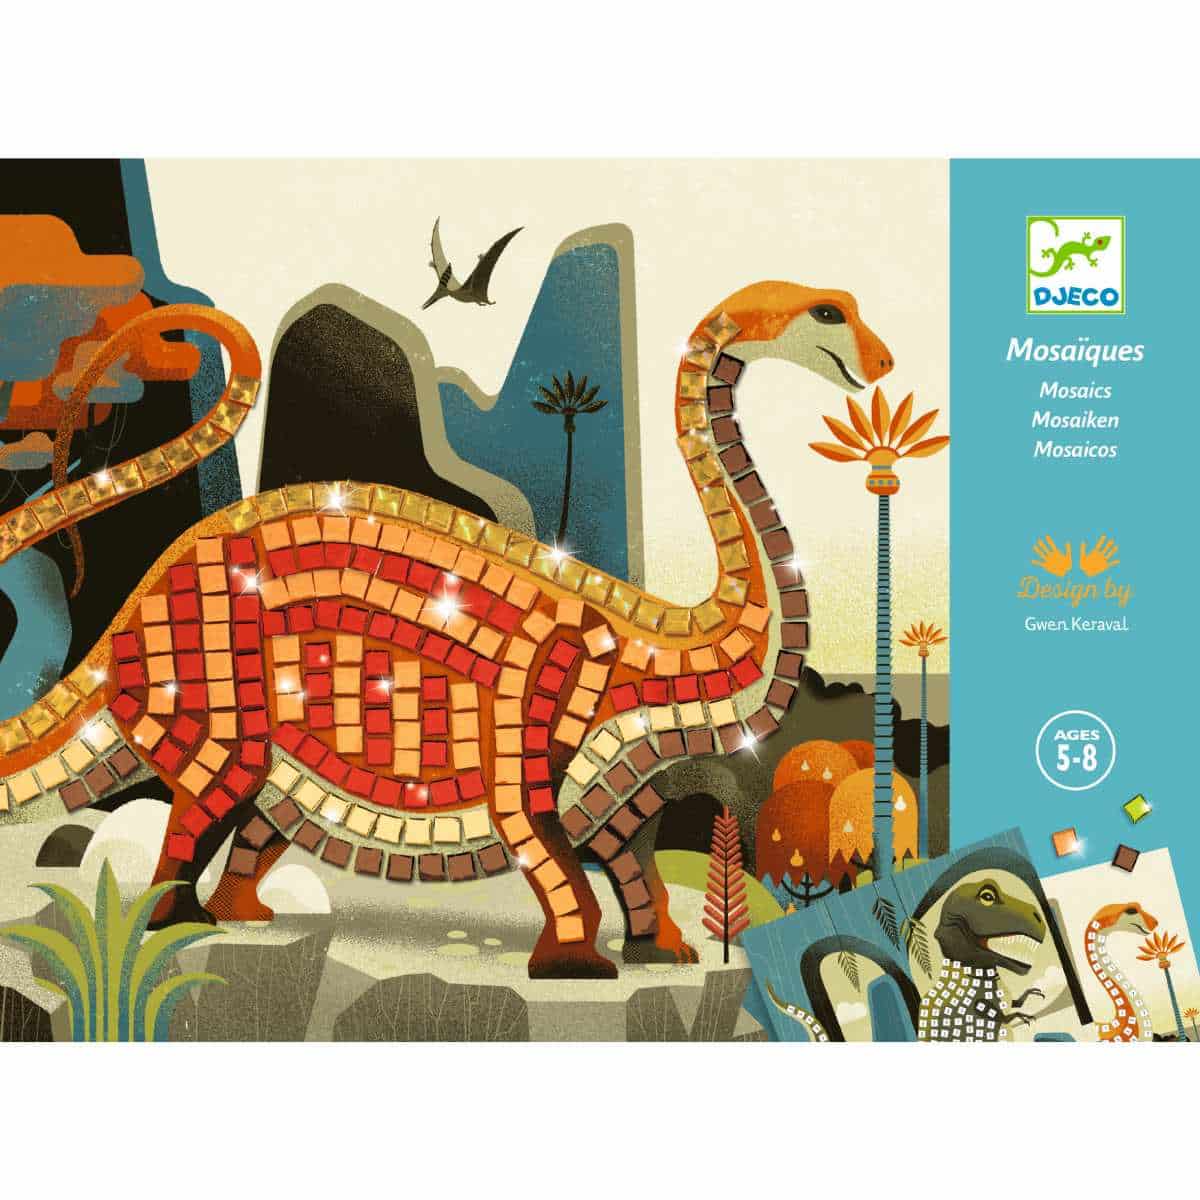 DJ08899 Djeco Mosaik (5-8y) - Dinosaurs